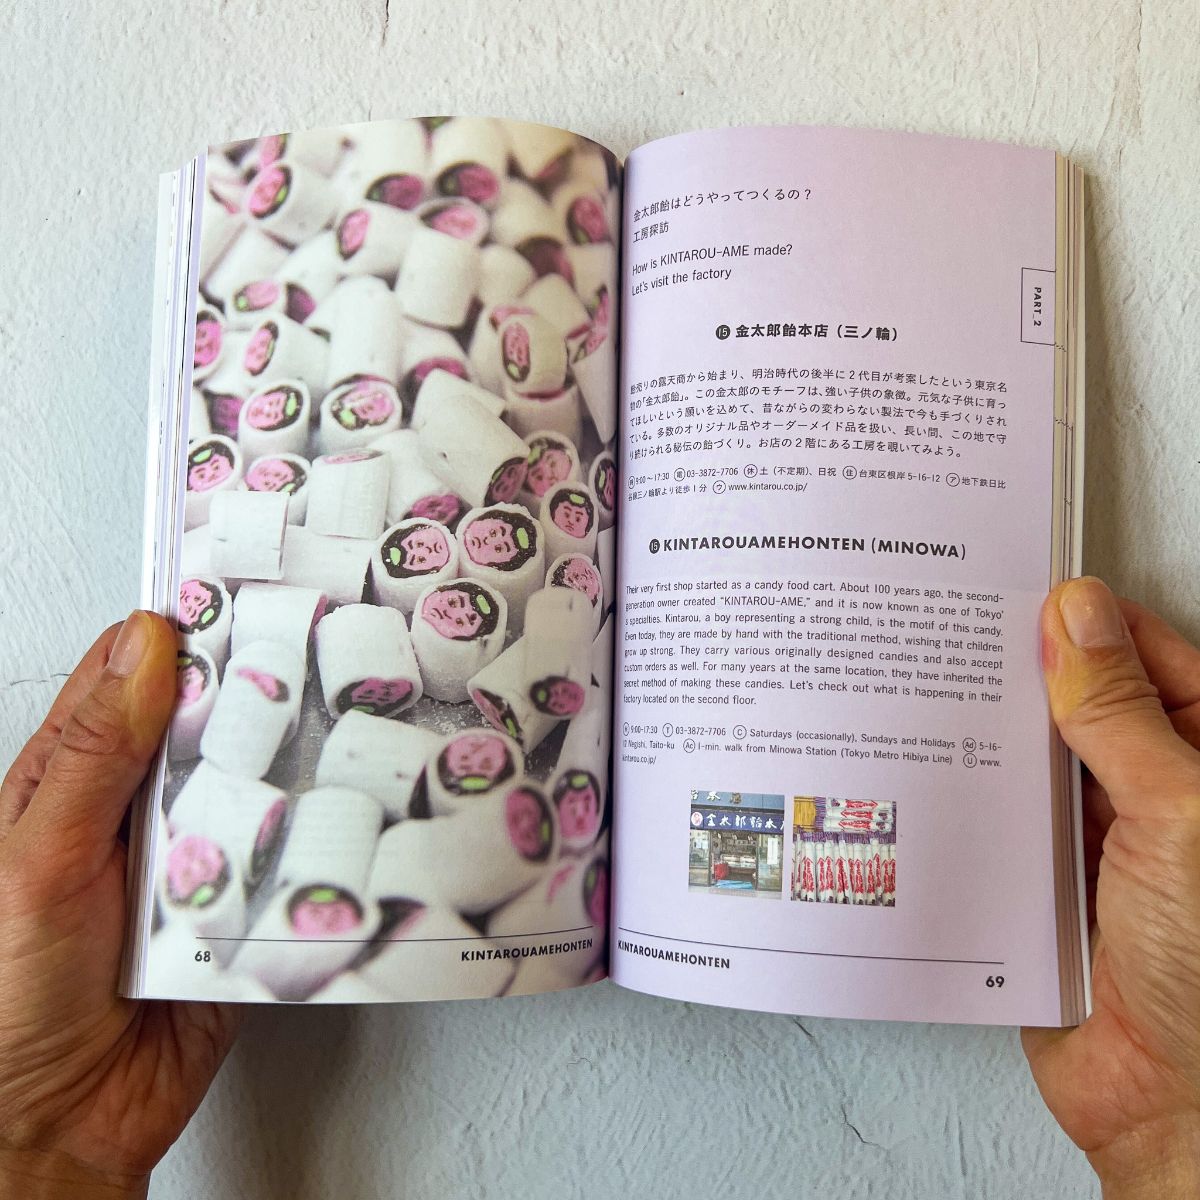 Tokyo Guide Book "TOKYO ARTRIP | Wagashi"Nagamochi Shop